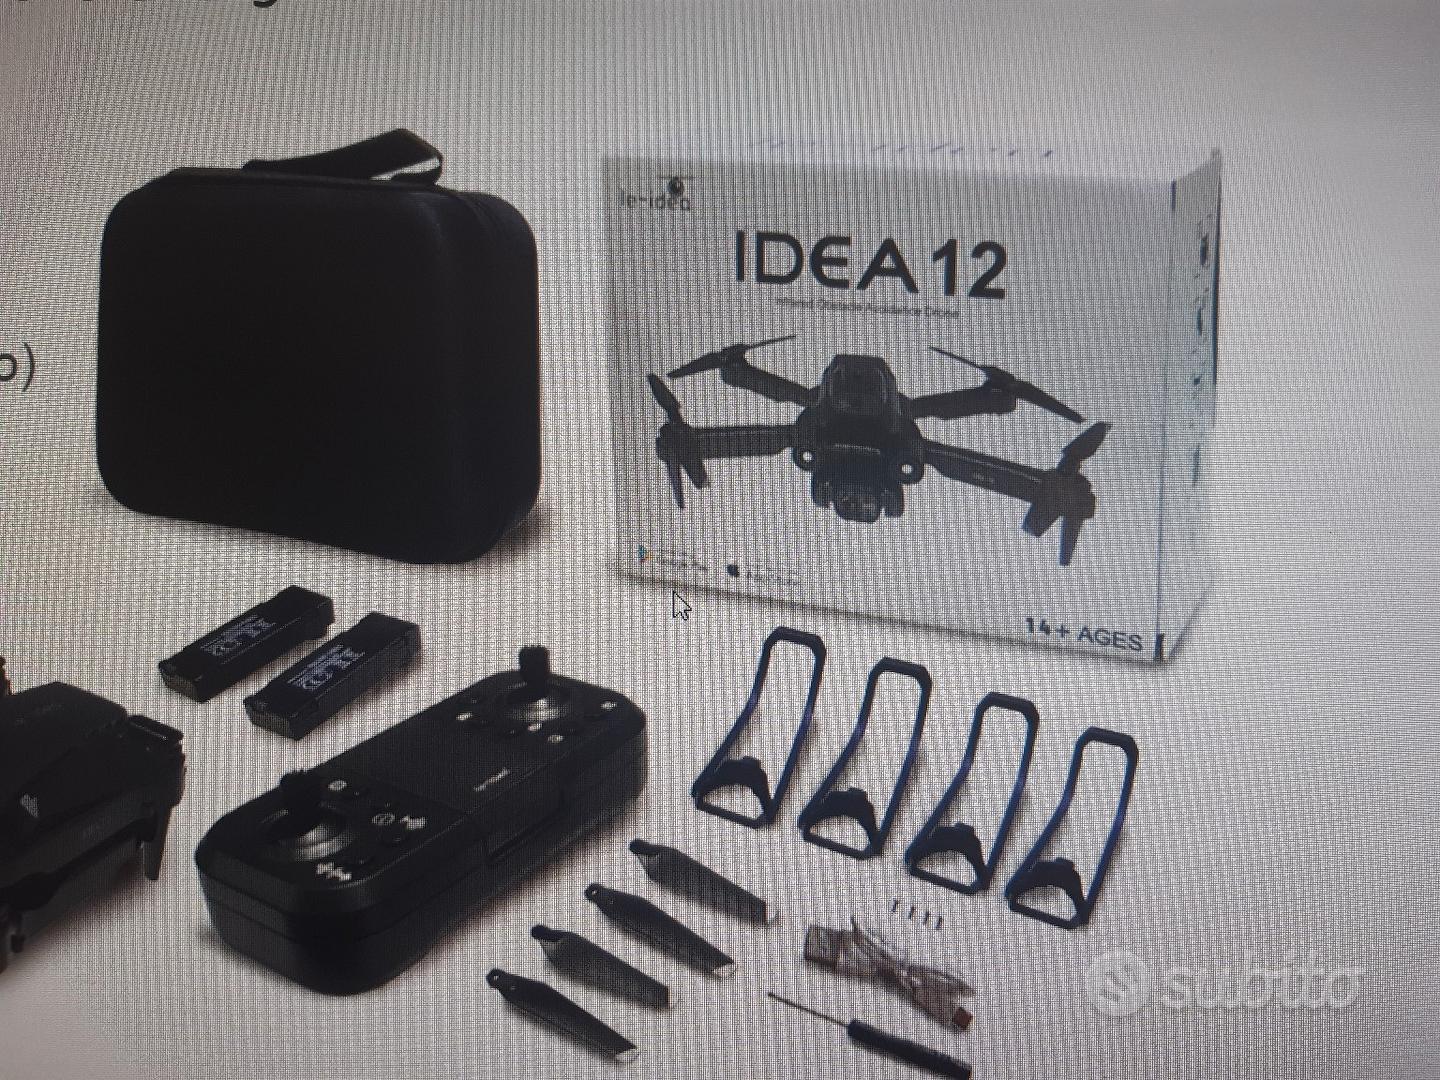 Drone pieghevole idea 12 - Audio/Video In vendita a Torino